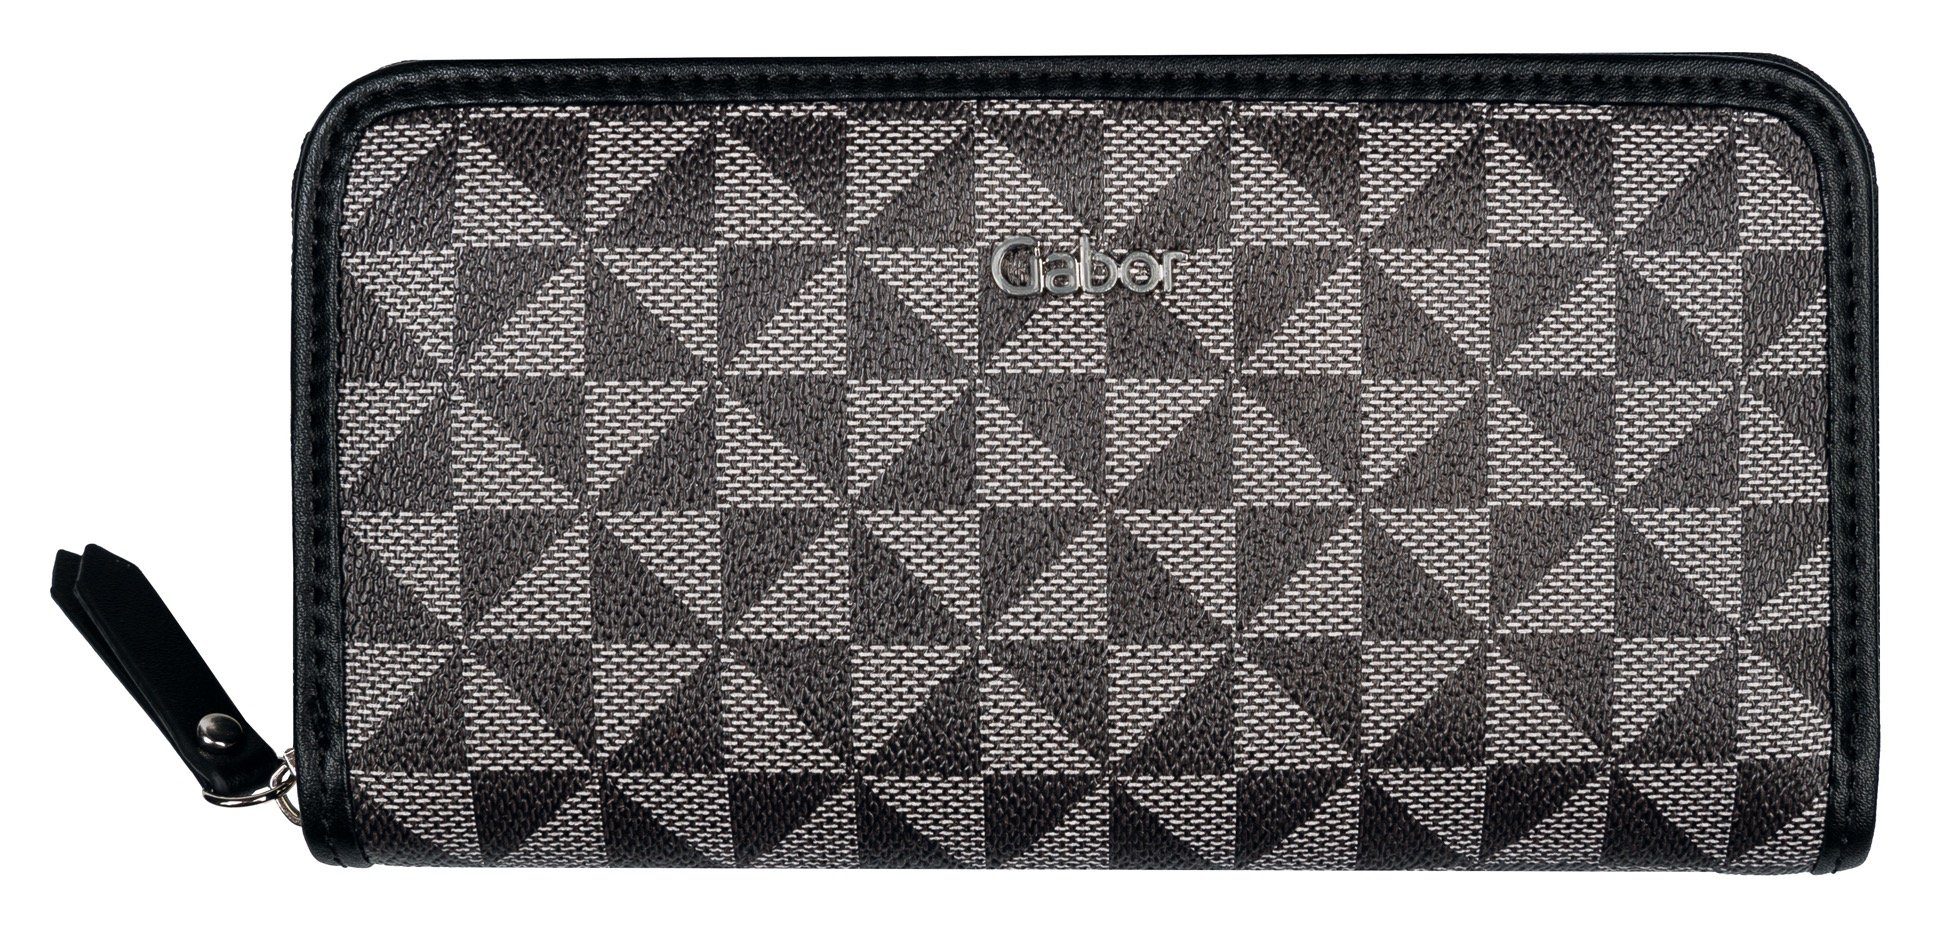 Gabor XL, Geldbörse mit Reißverschluss Long BARINA wallet schwarz Hauptfach zip